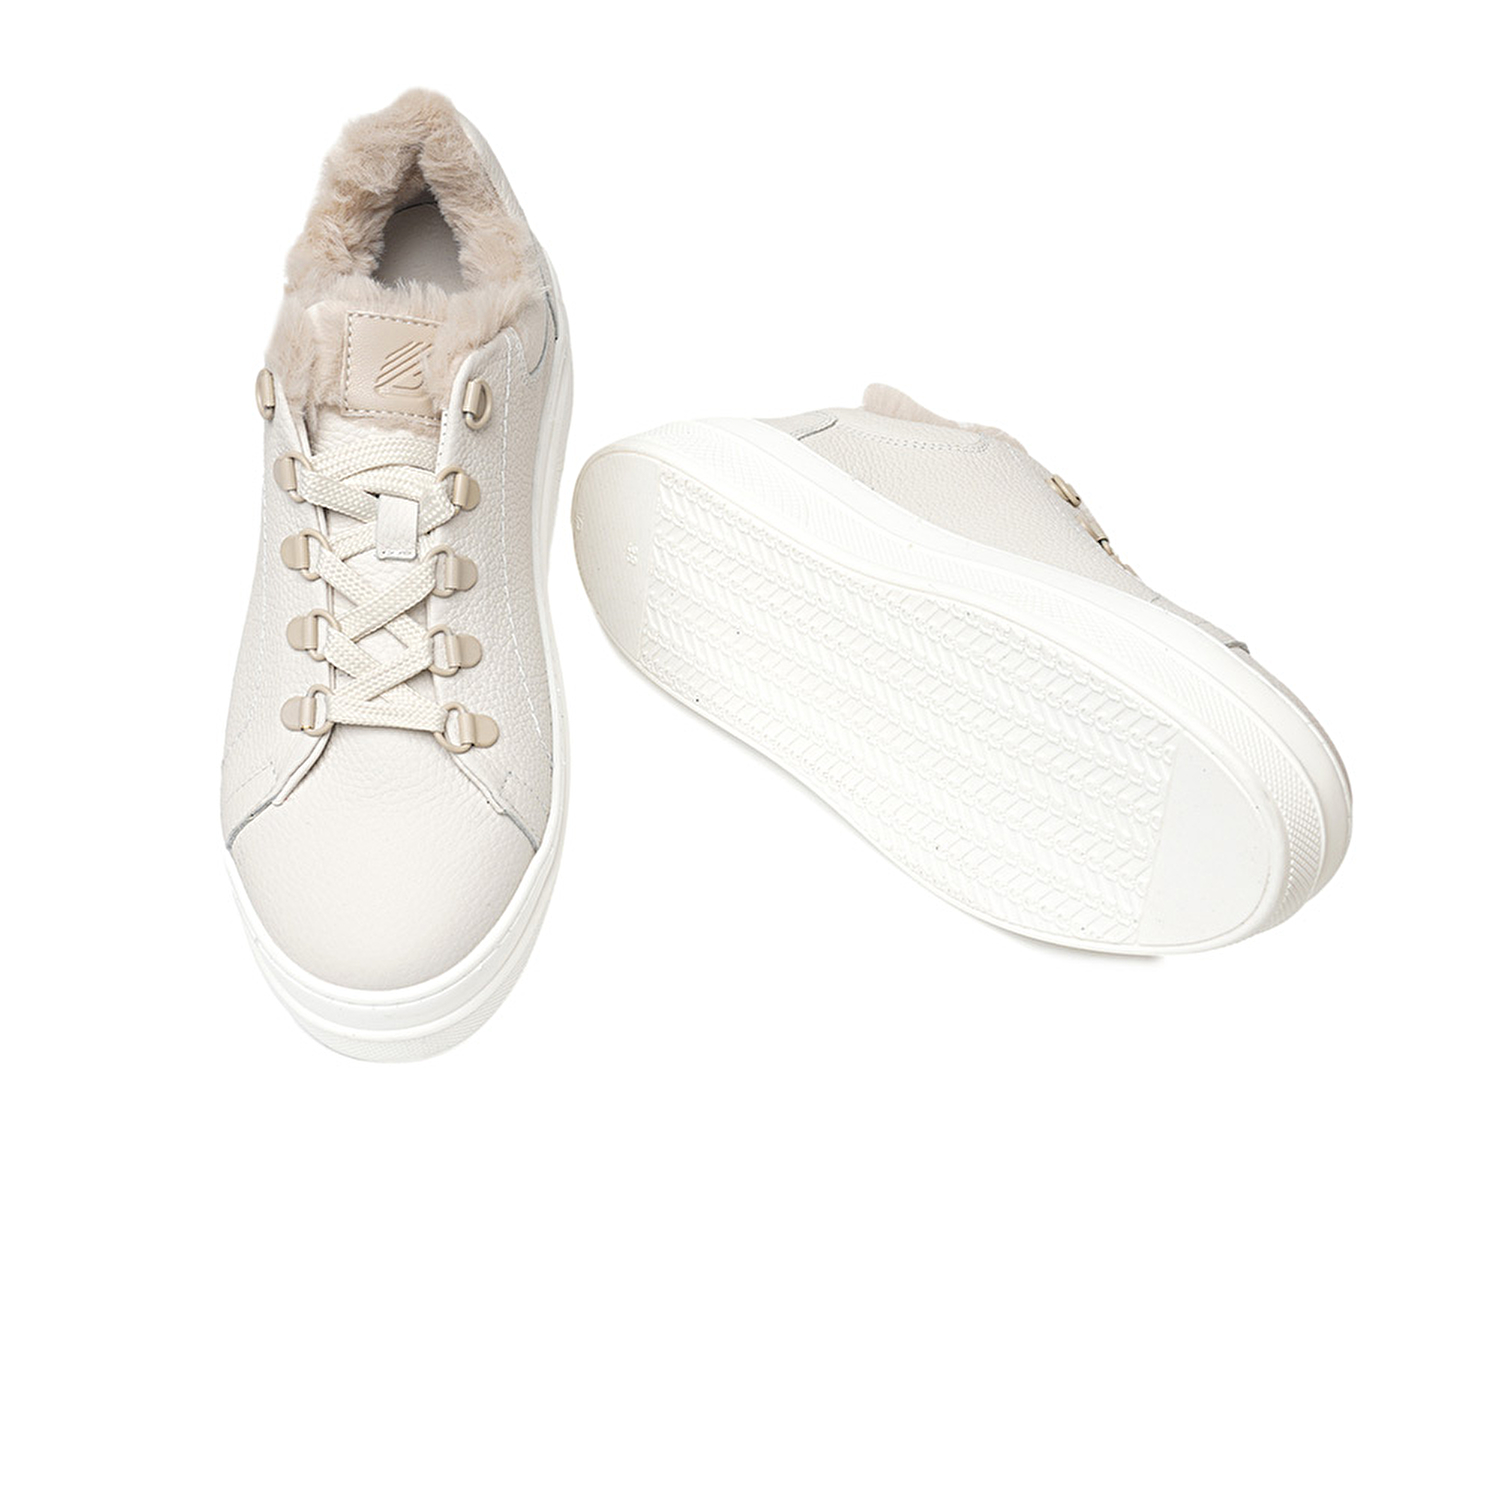 Kadın Kirli Beyaz Hakiki Deri Sneaker Ayakkabı 3K2SA33070-6